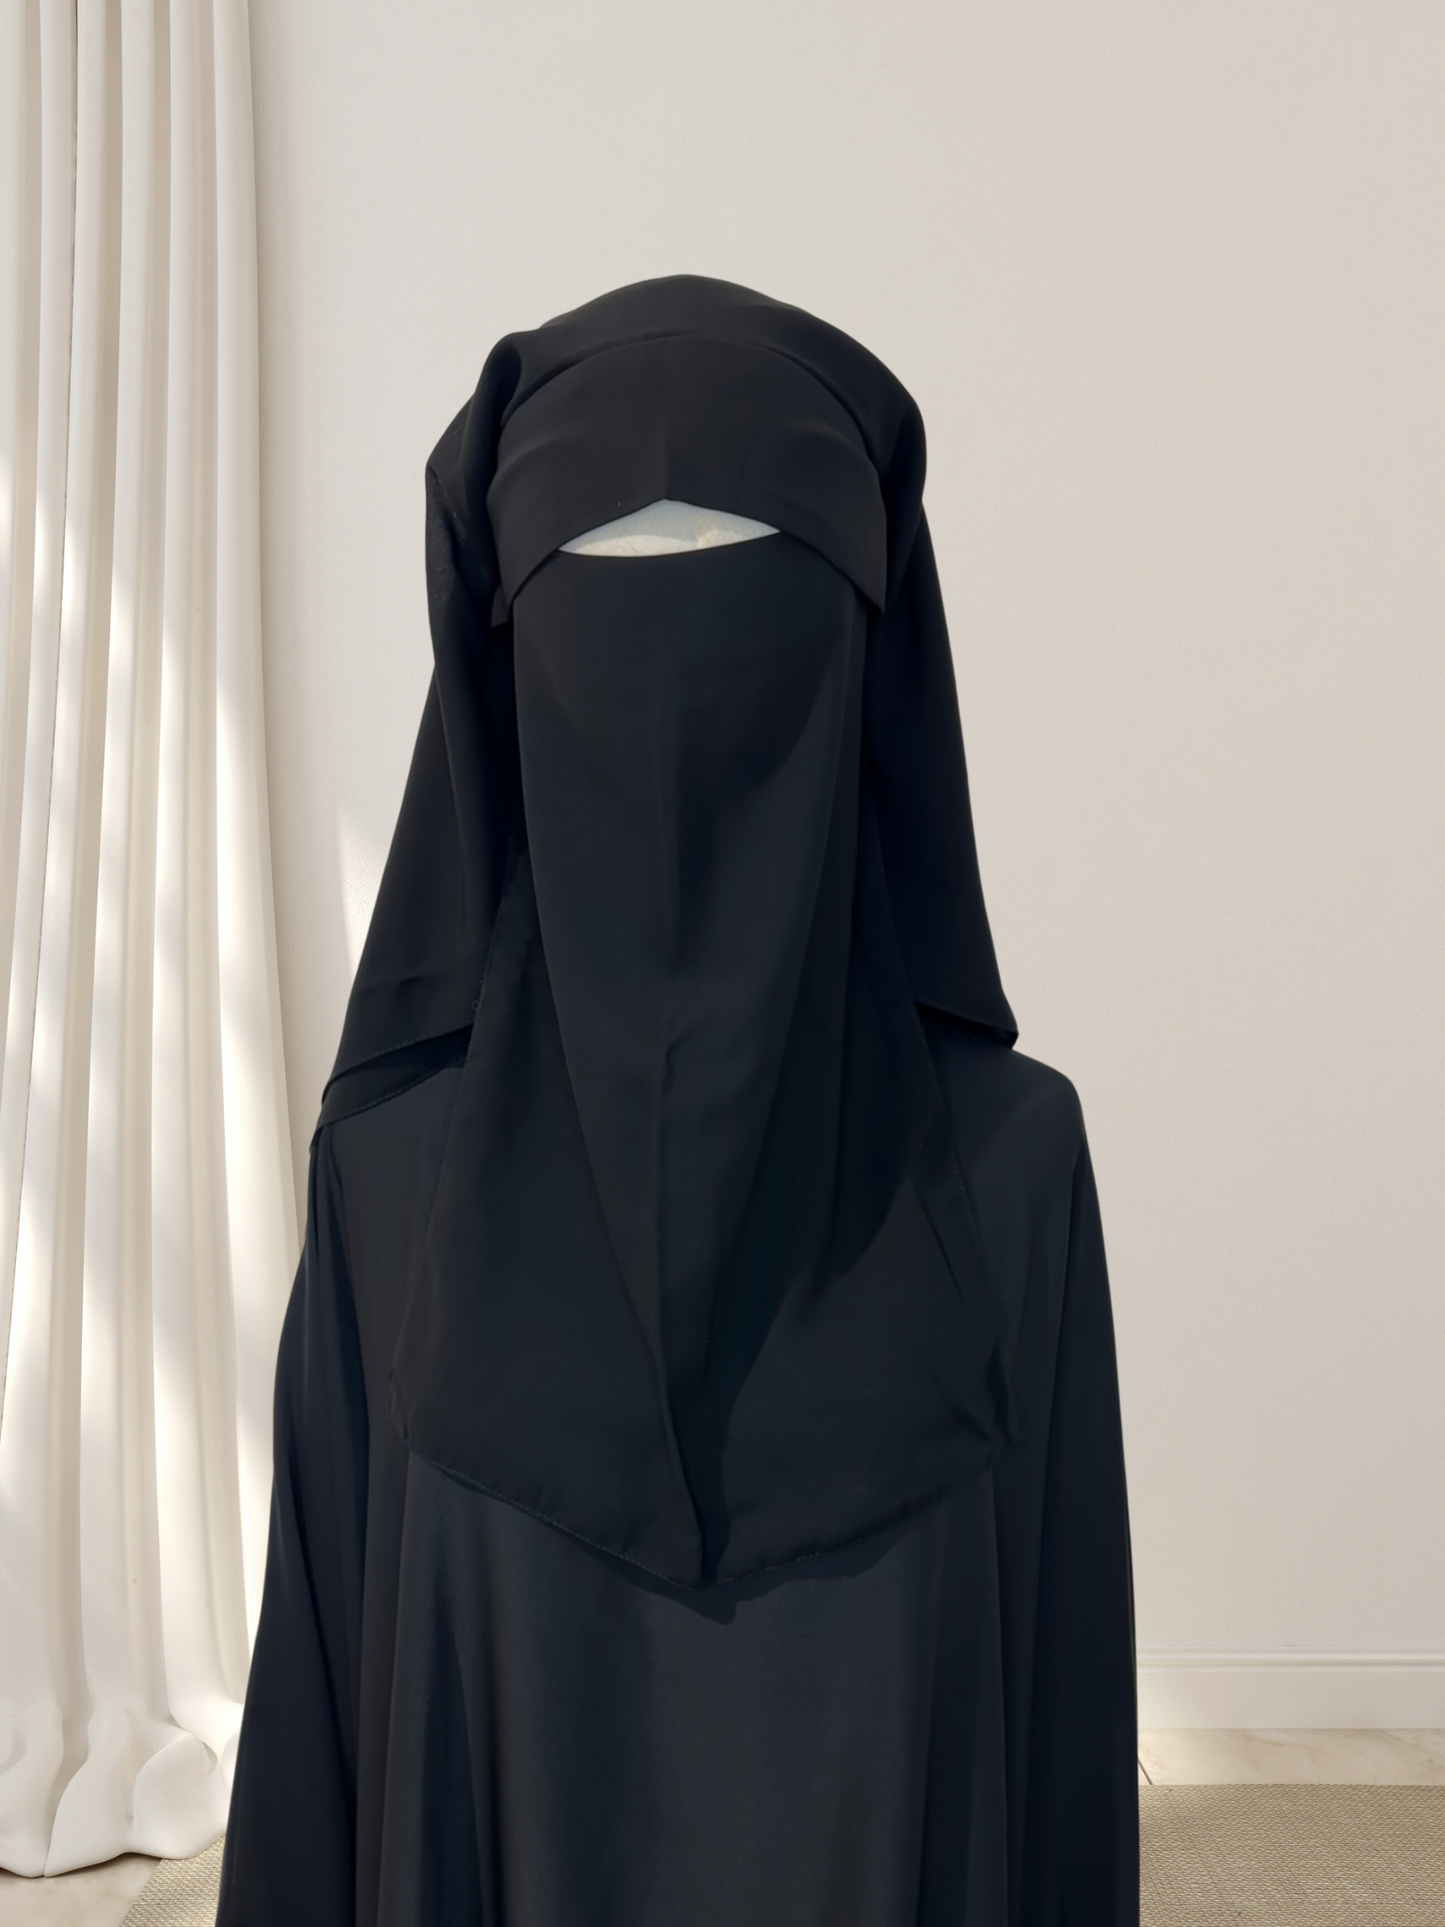 Niqab pull down casquette